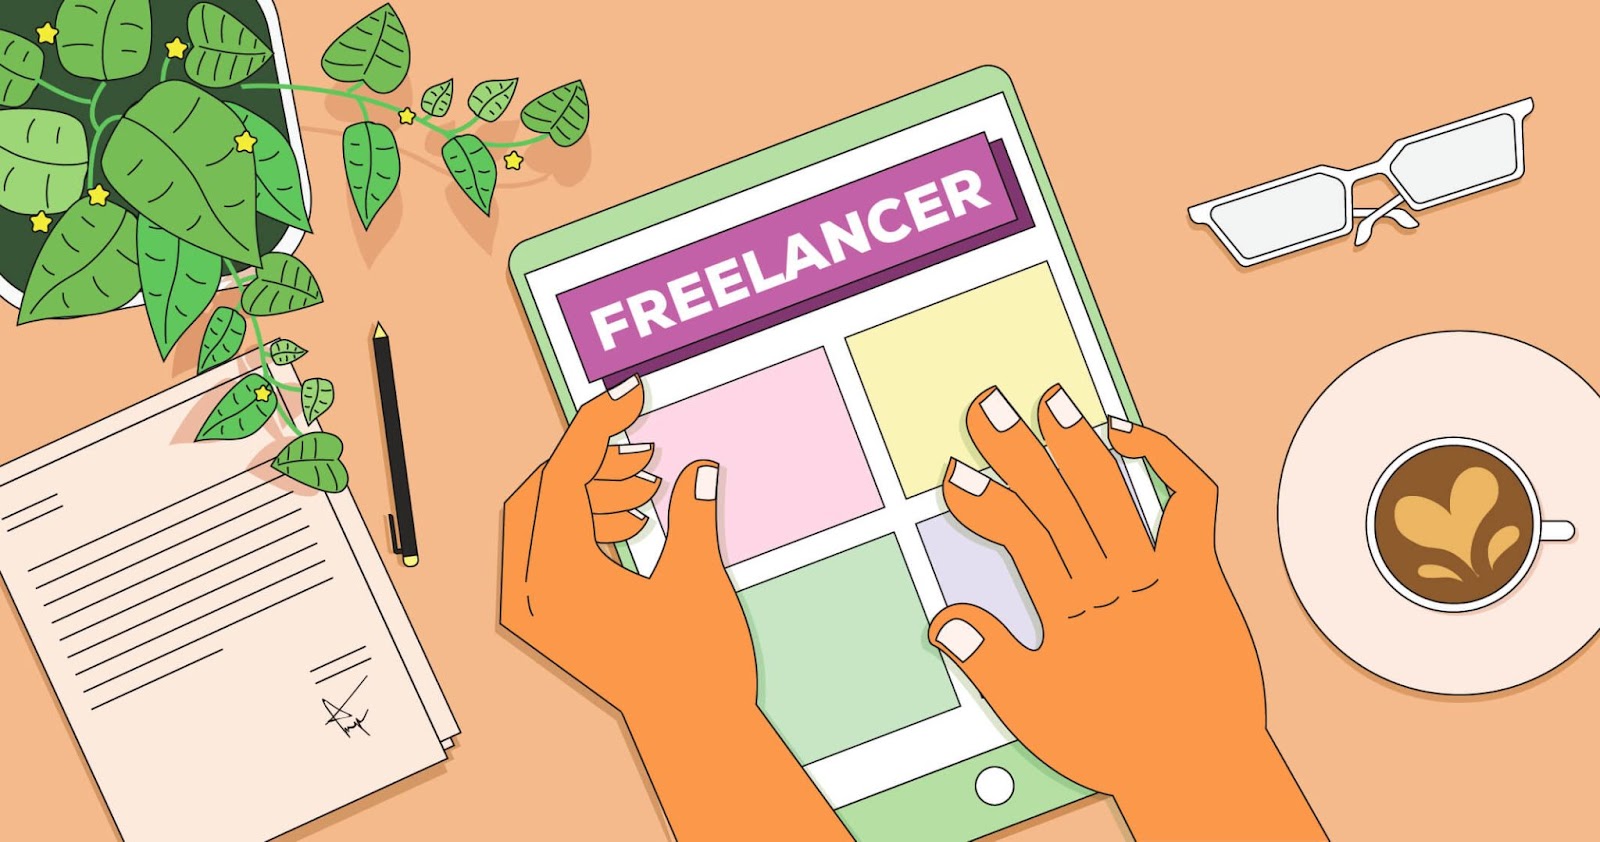 Freelancer là gì? Có nên làm freelancer hay không?